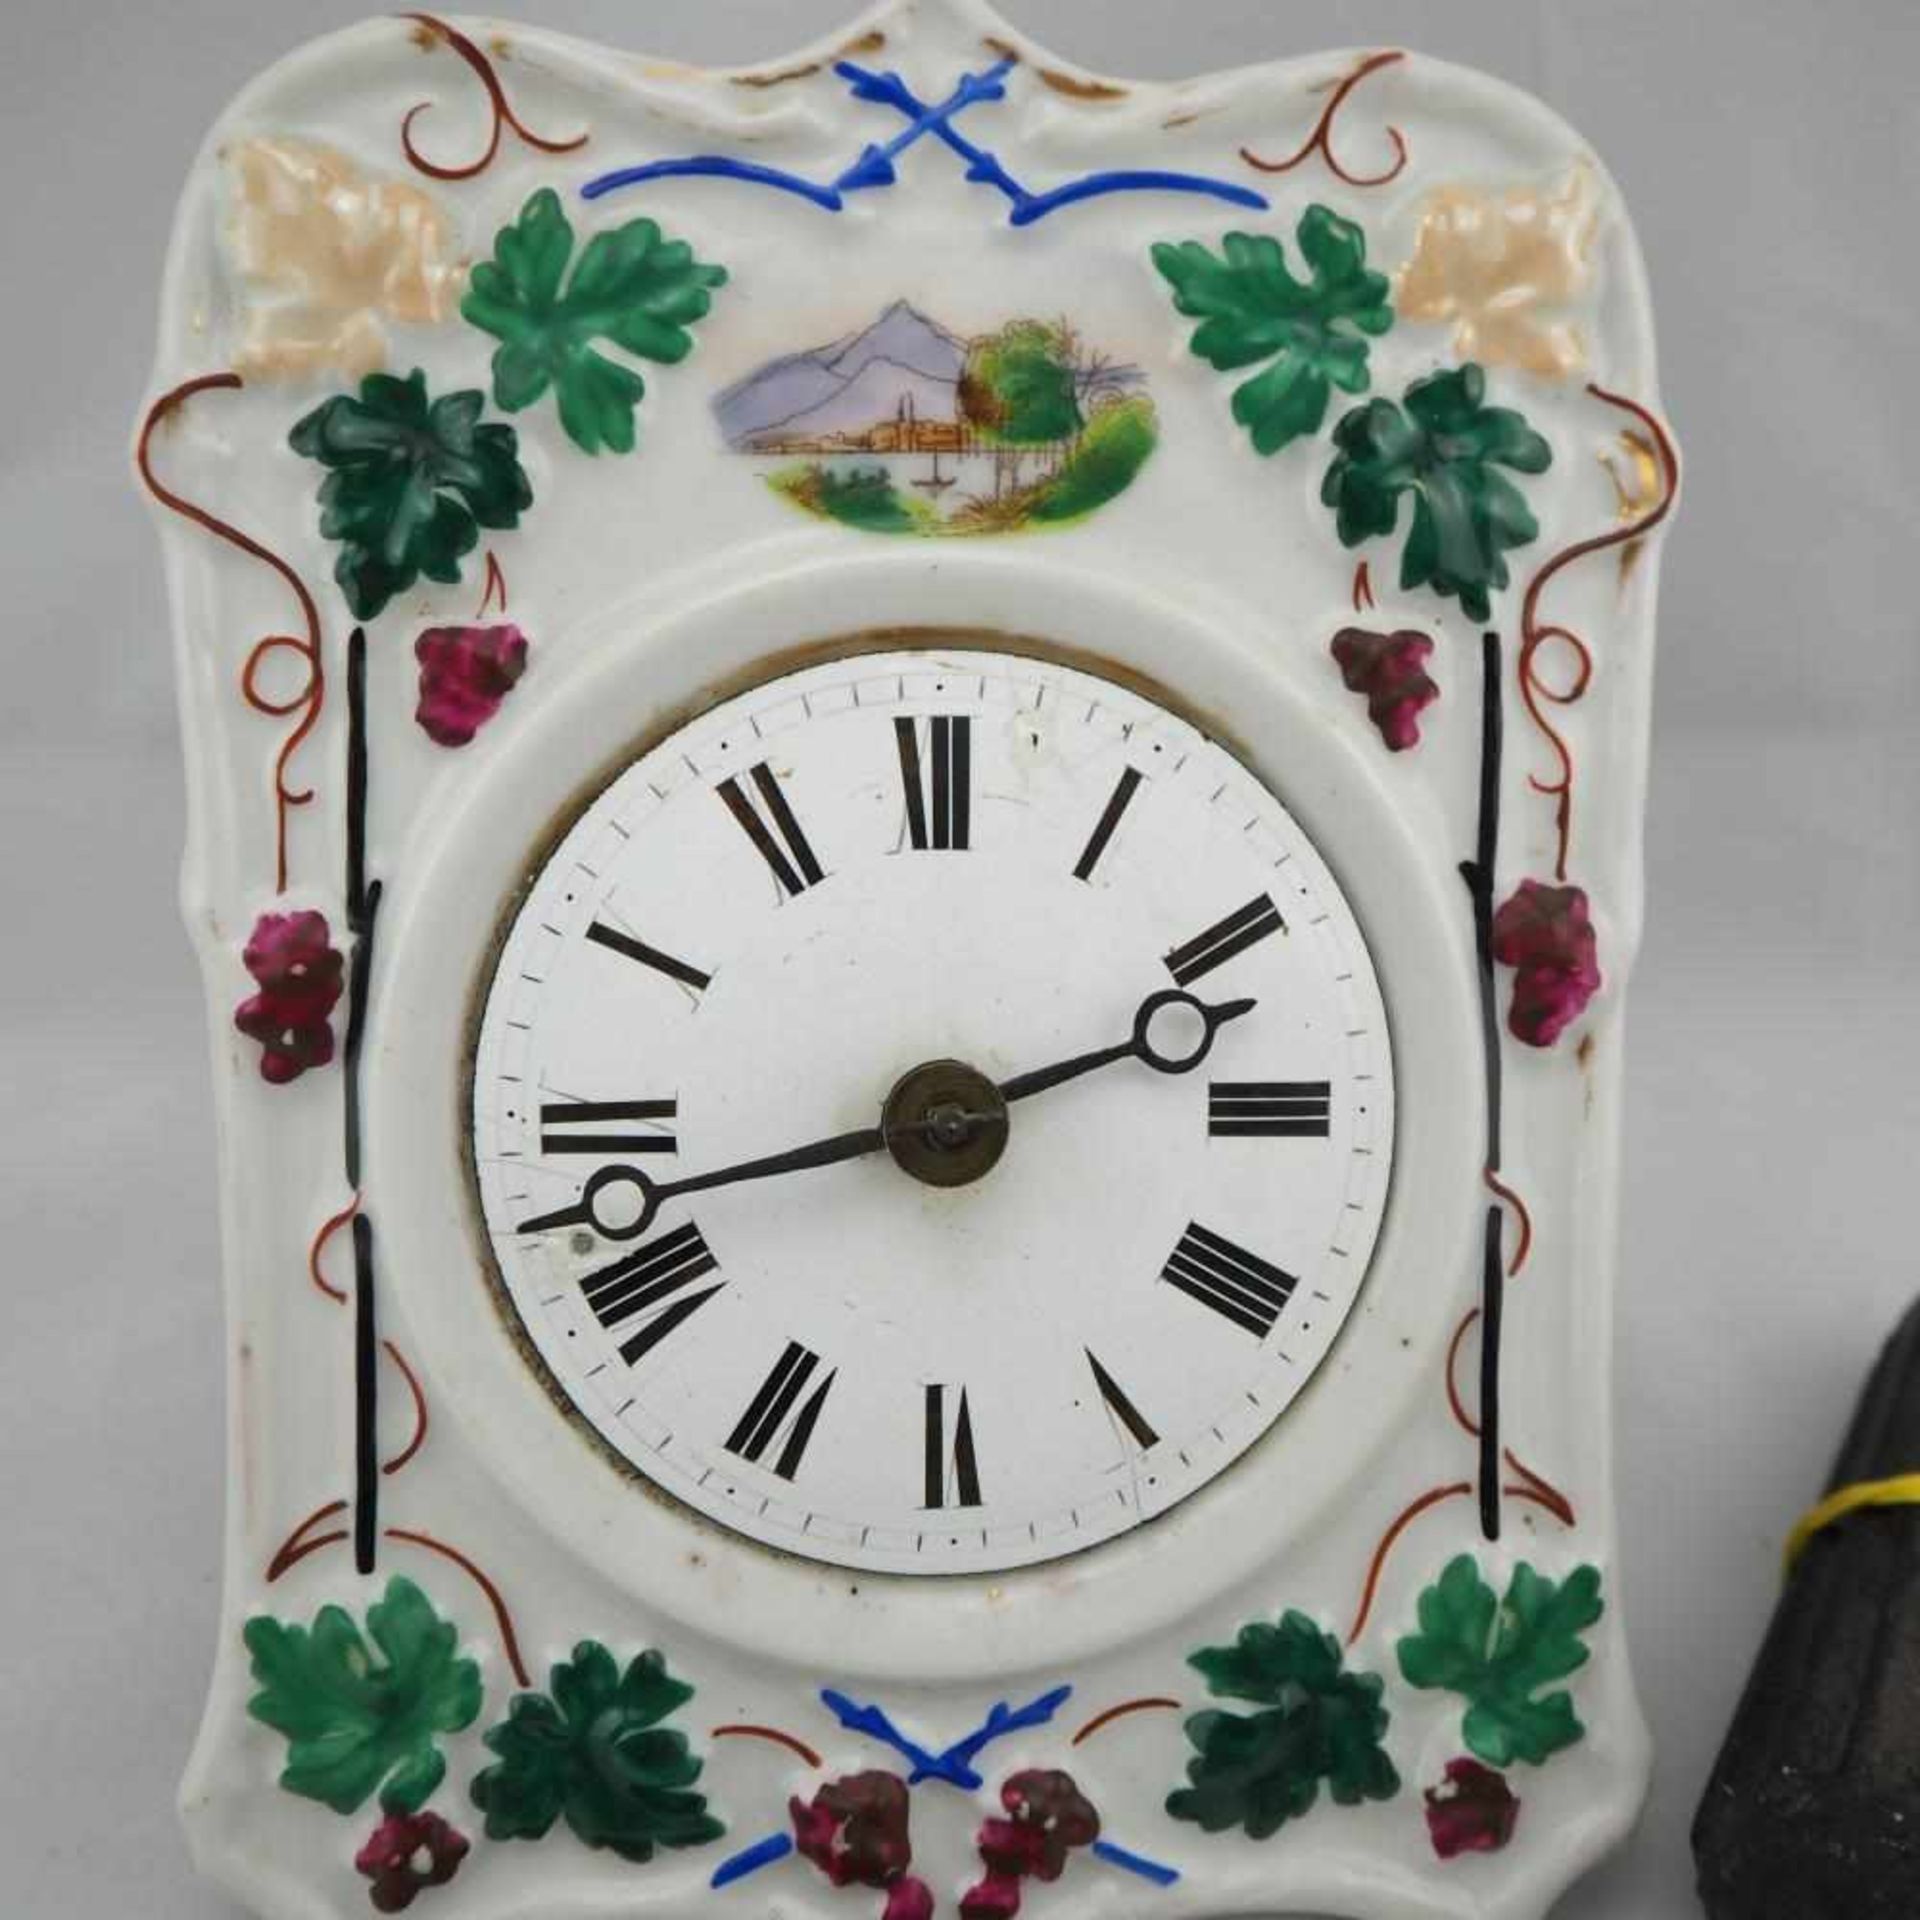 Porzellanschild Uhr, um 1900Bauernuhr mit Porzellanschild (intakt). Emaille Zifferblatt, - Bild 2 aus 3